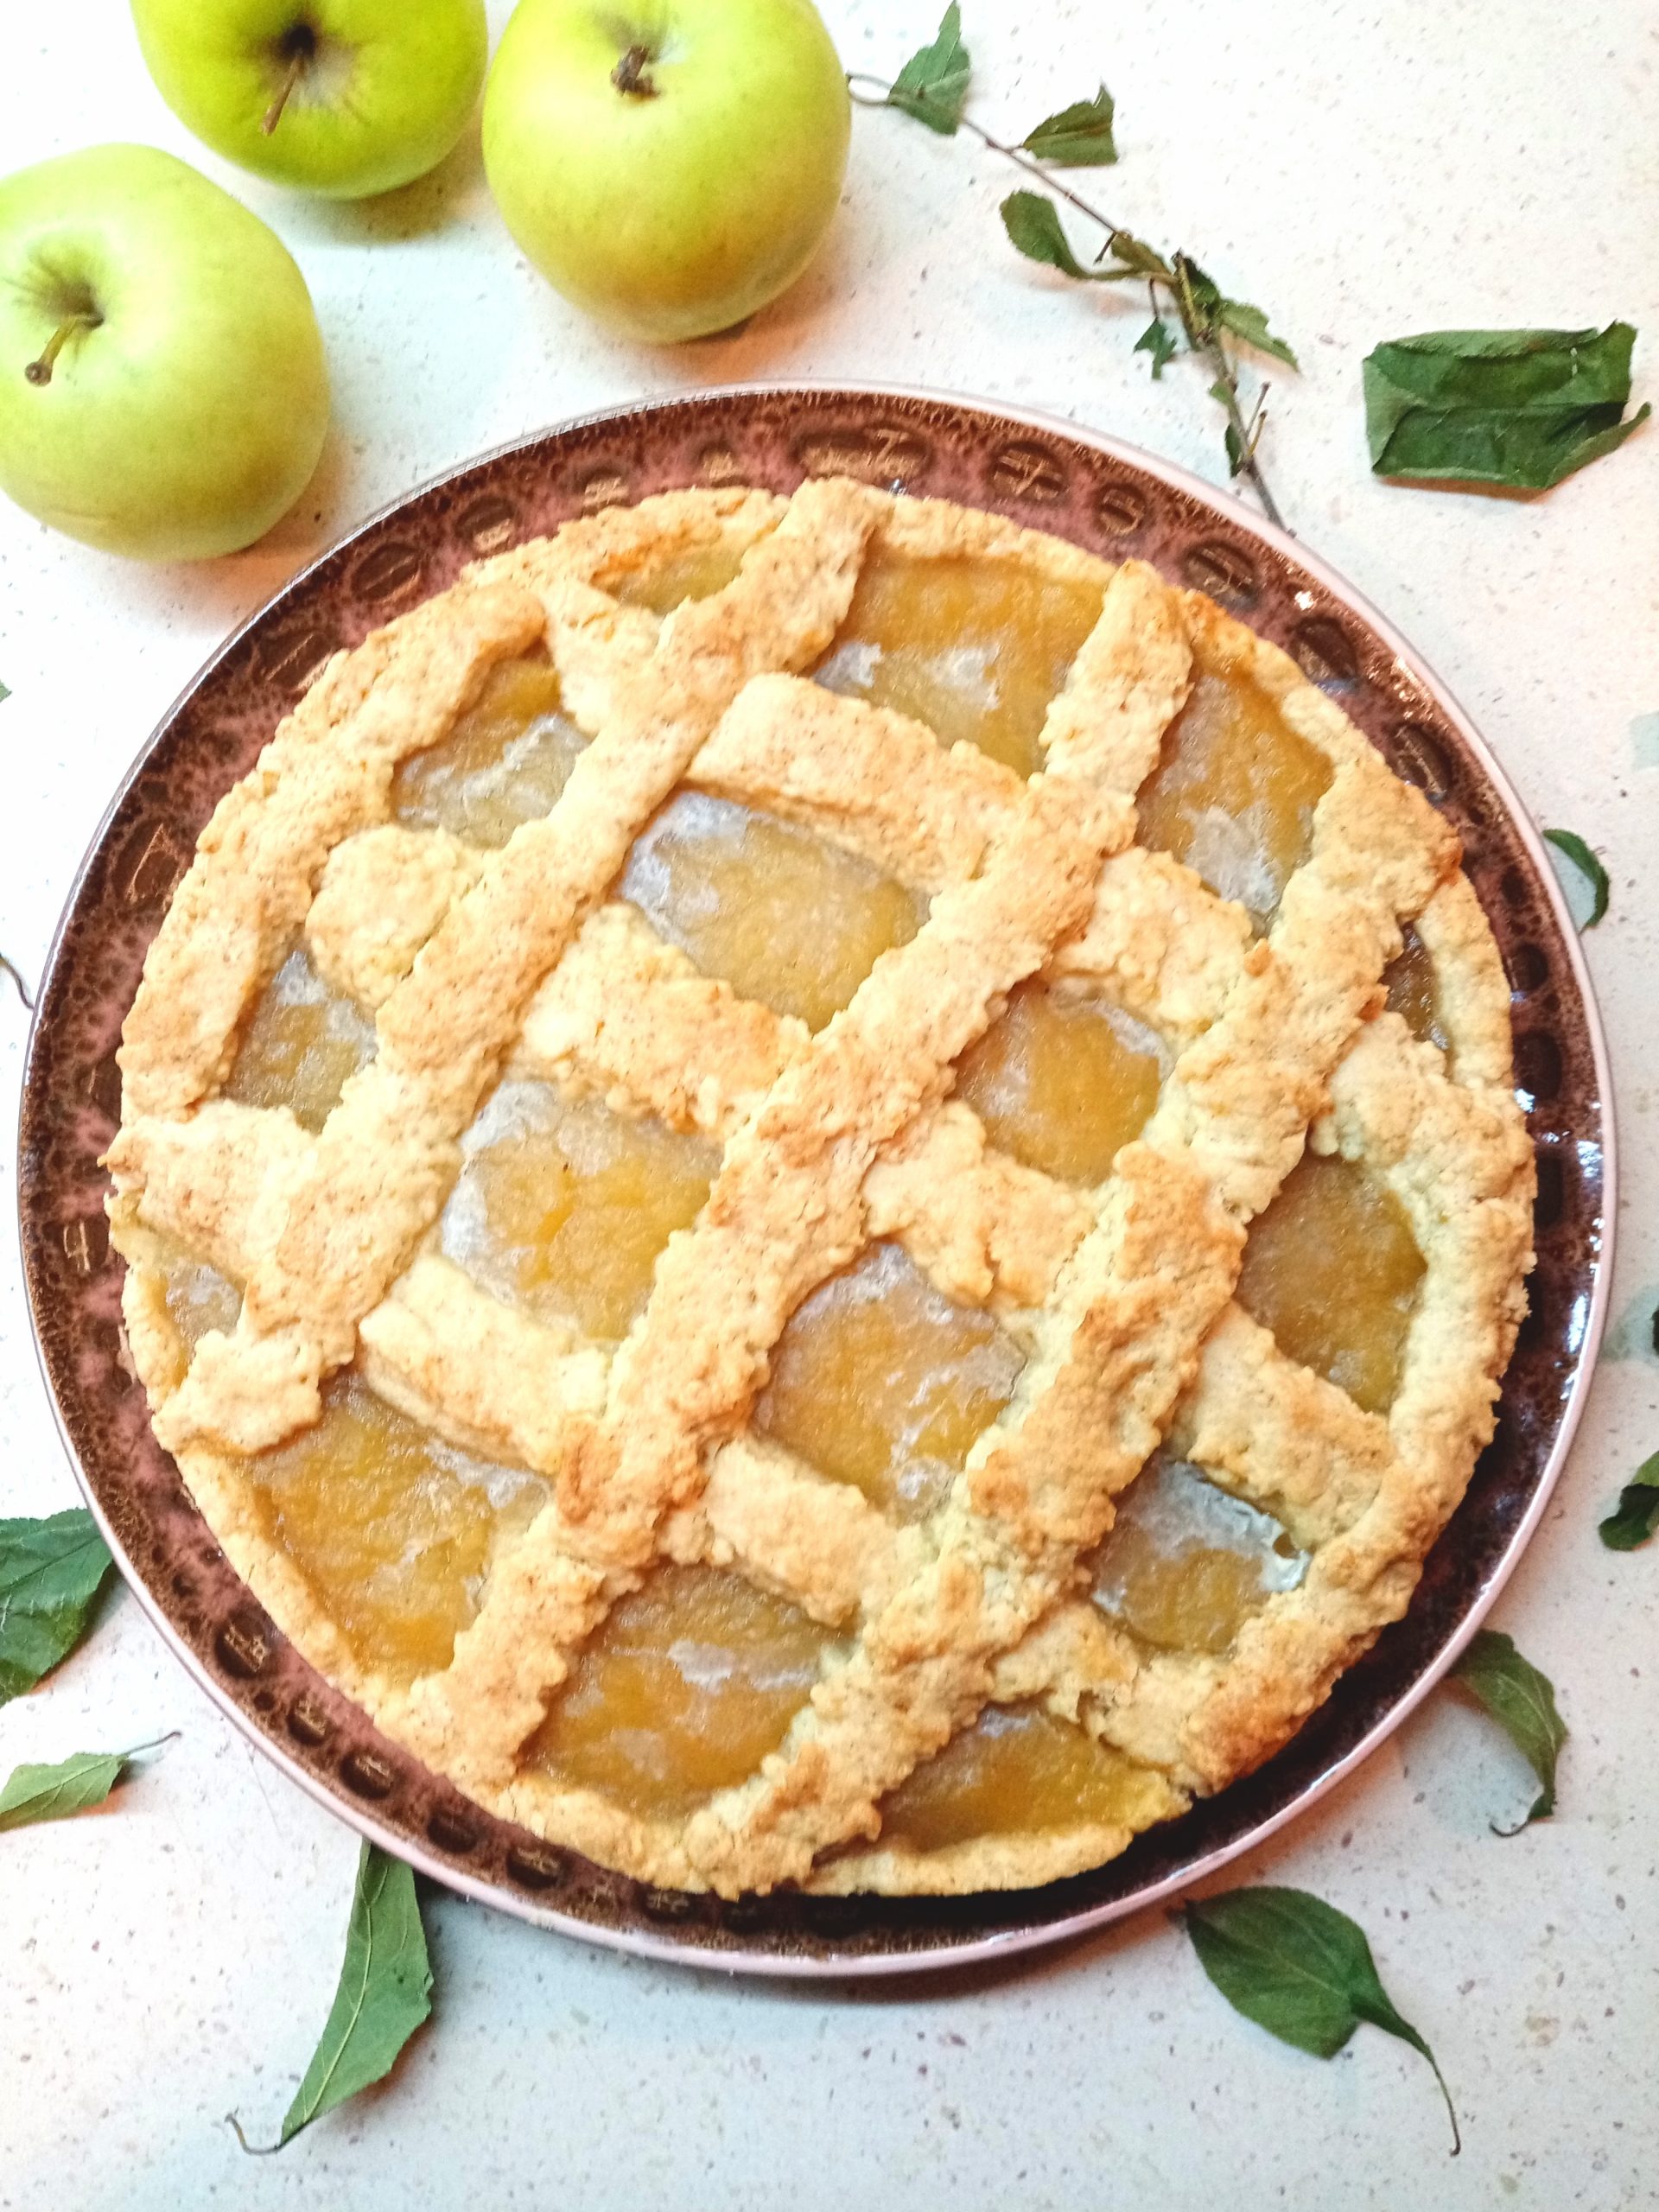 Tarte de Maçã (Apple Pie)